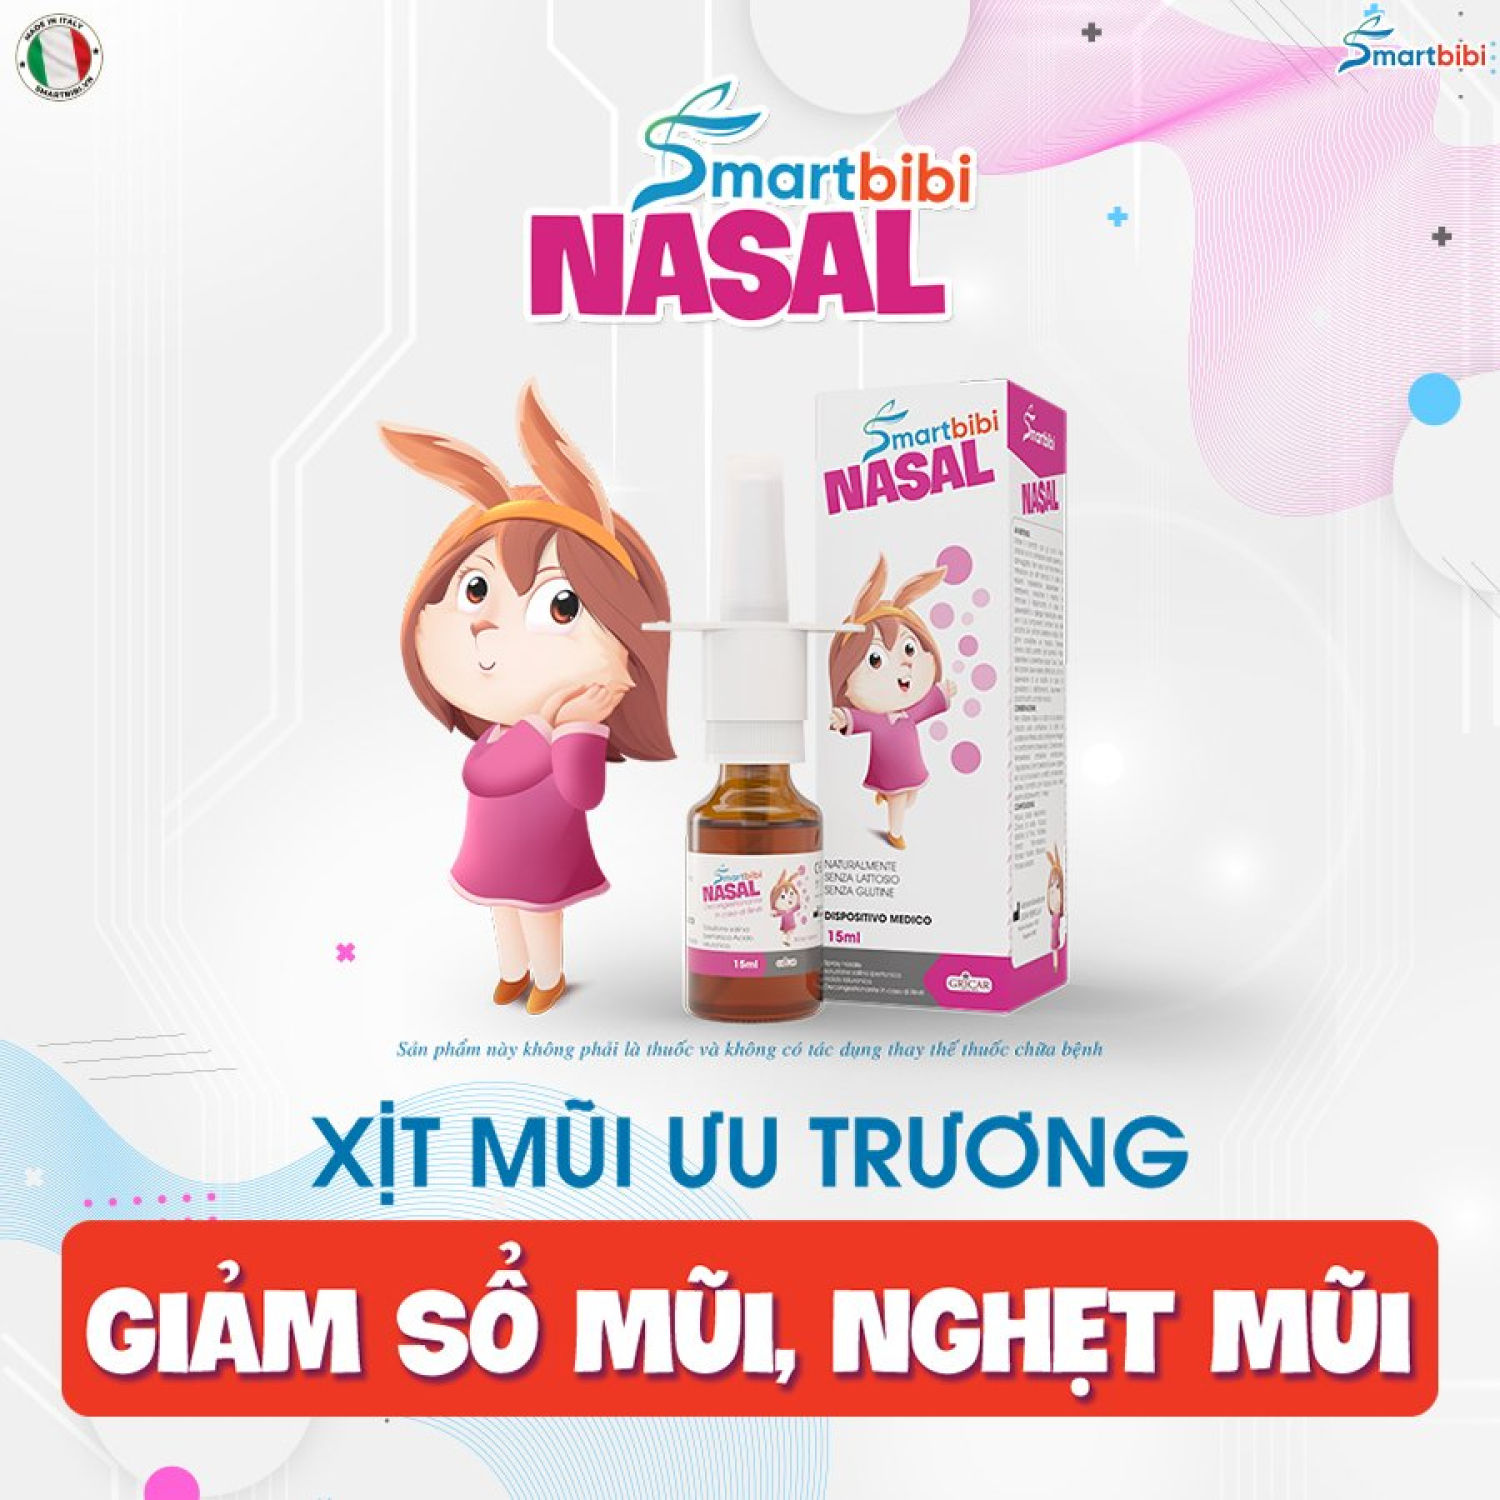 Xịt mũi Nasal Smartbibi- Vệ sinh mũi, làm loãng dịch mũi, hỗ trợ viêm mũi